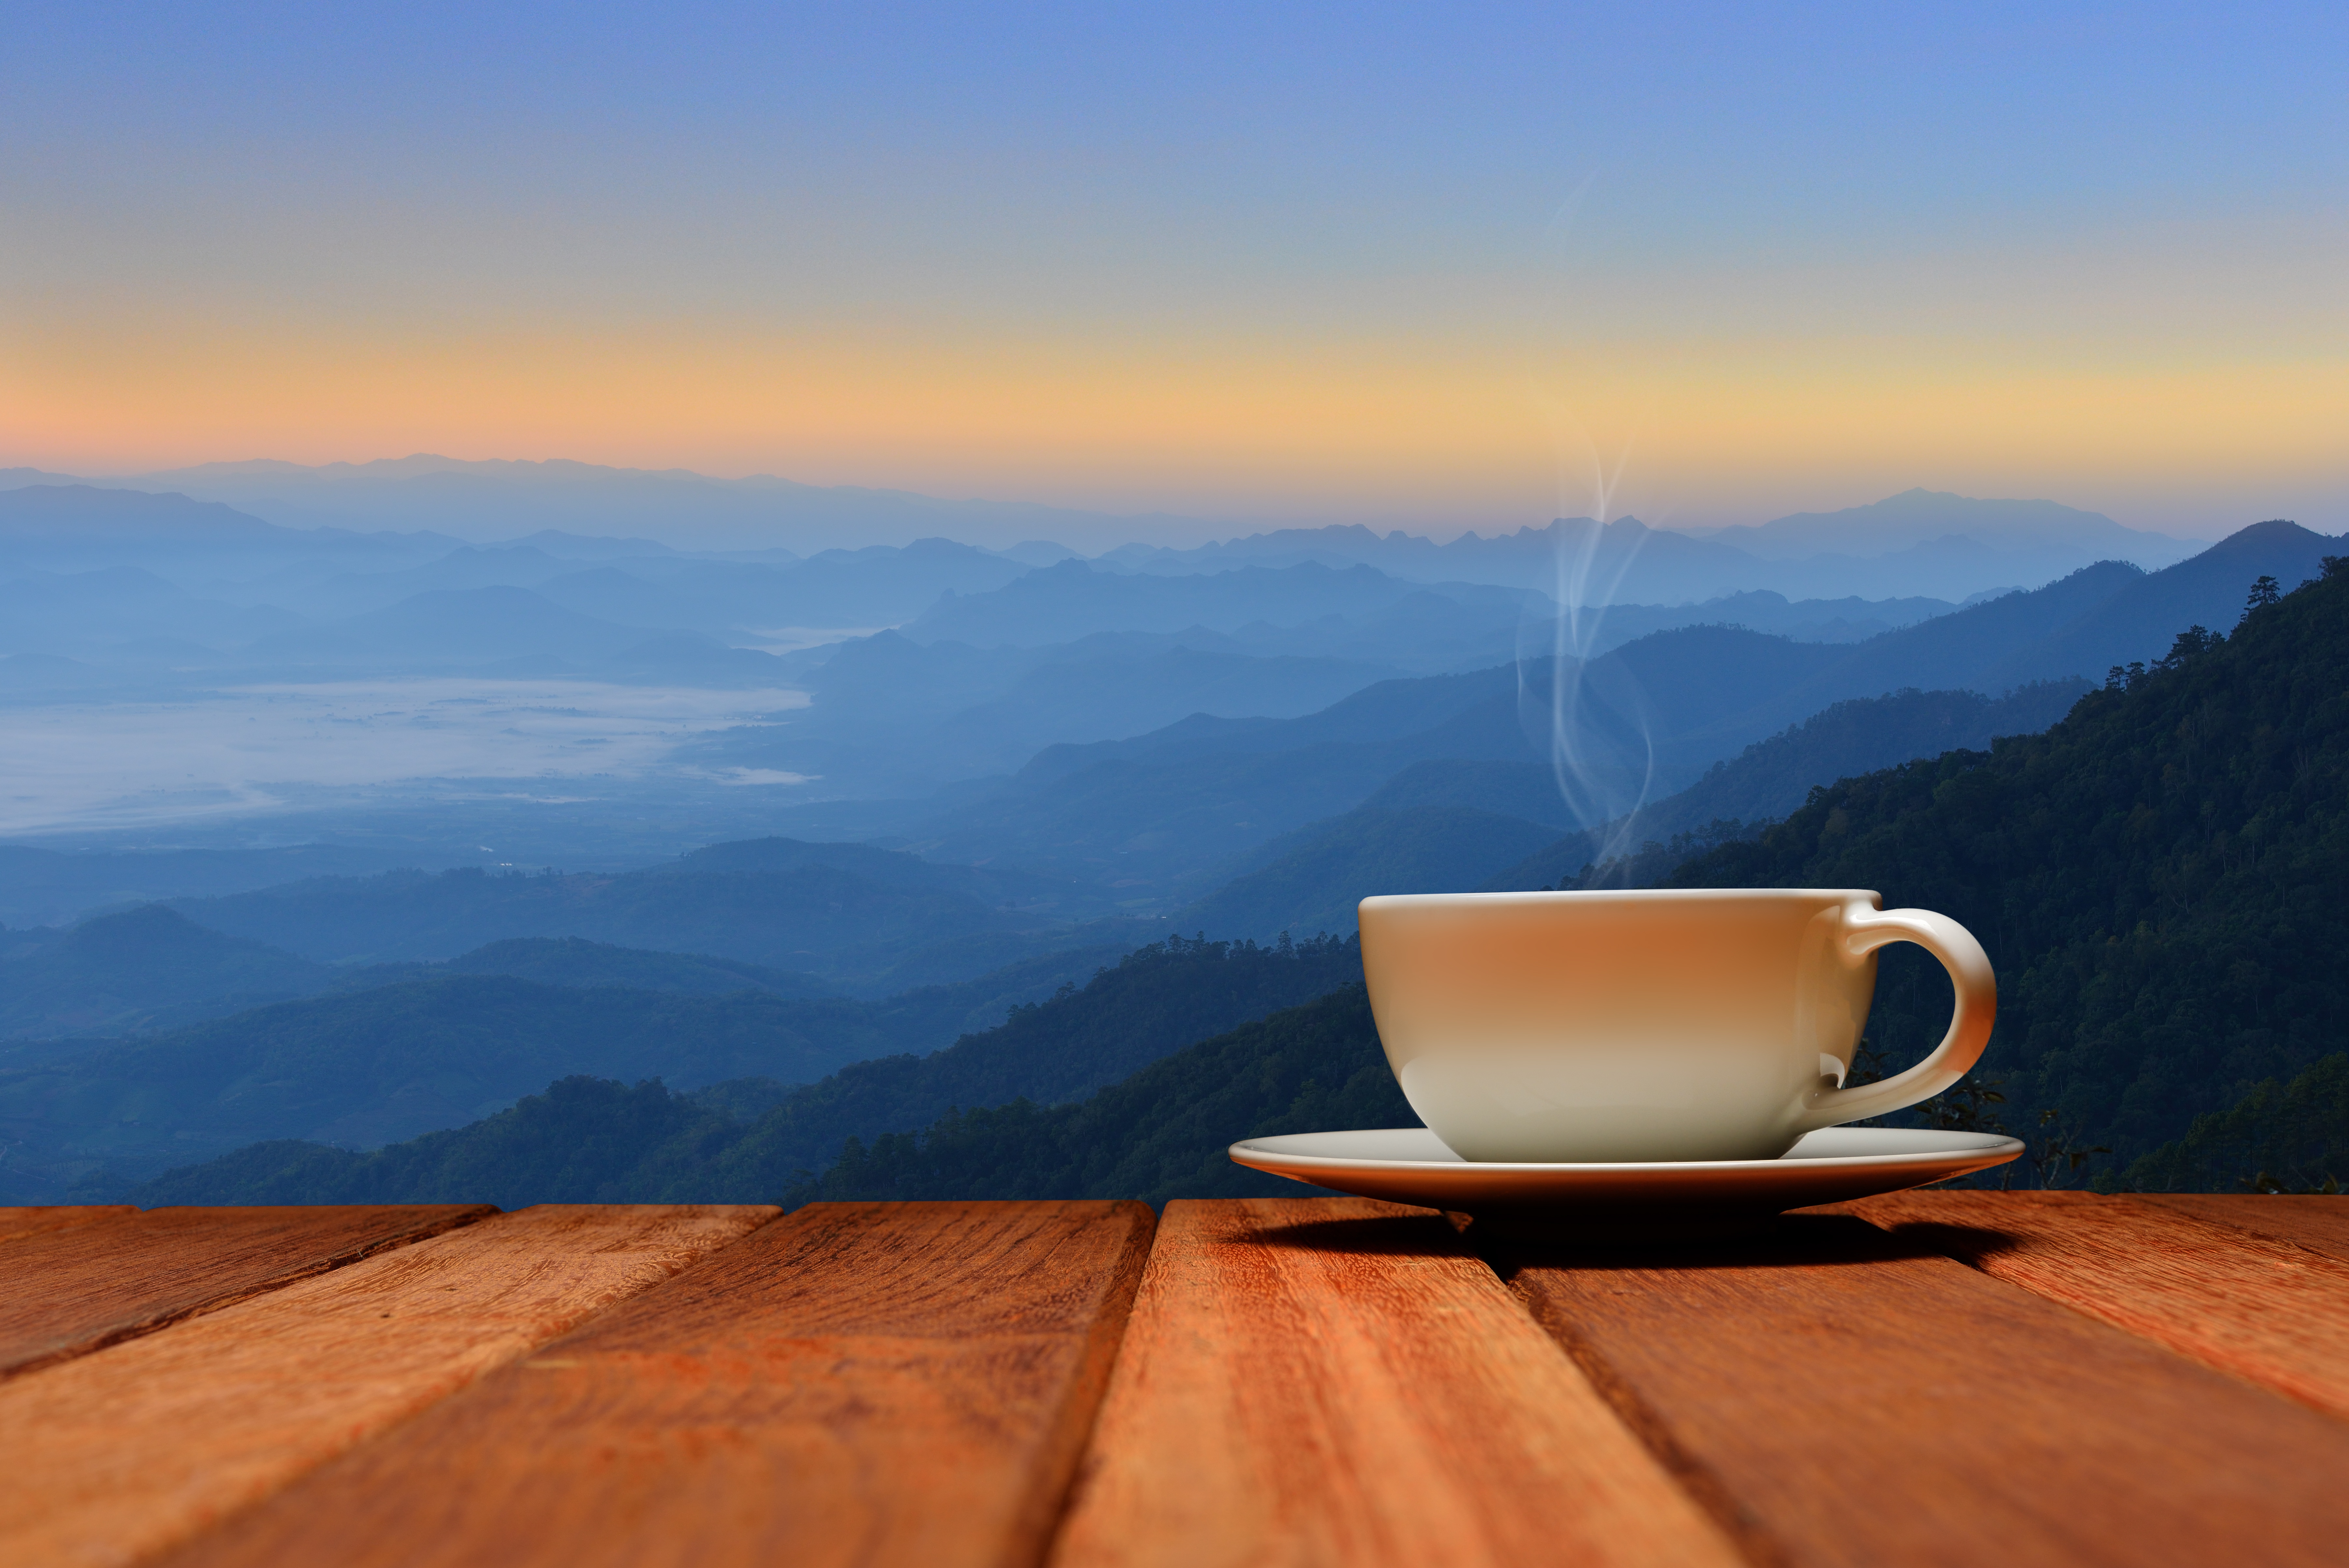 Utro. Чашка кофе на столе. Утро кофе. Утренние горы. Чай на природе.